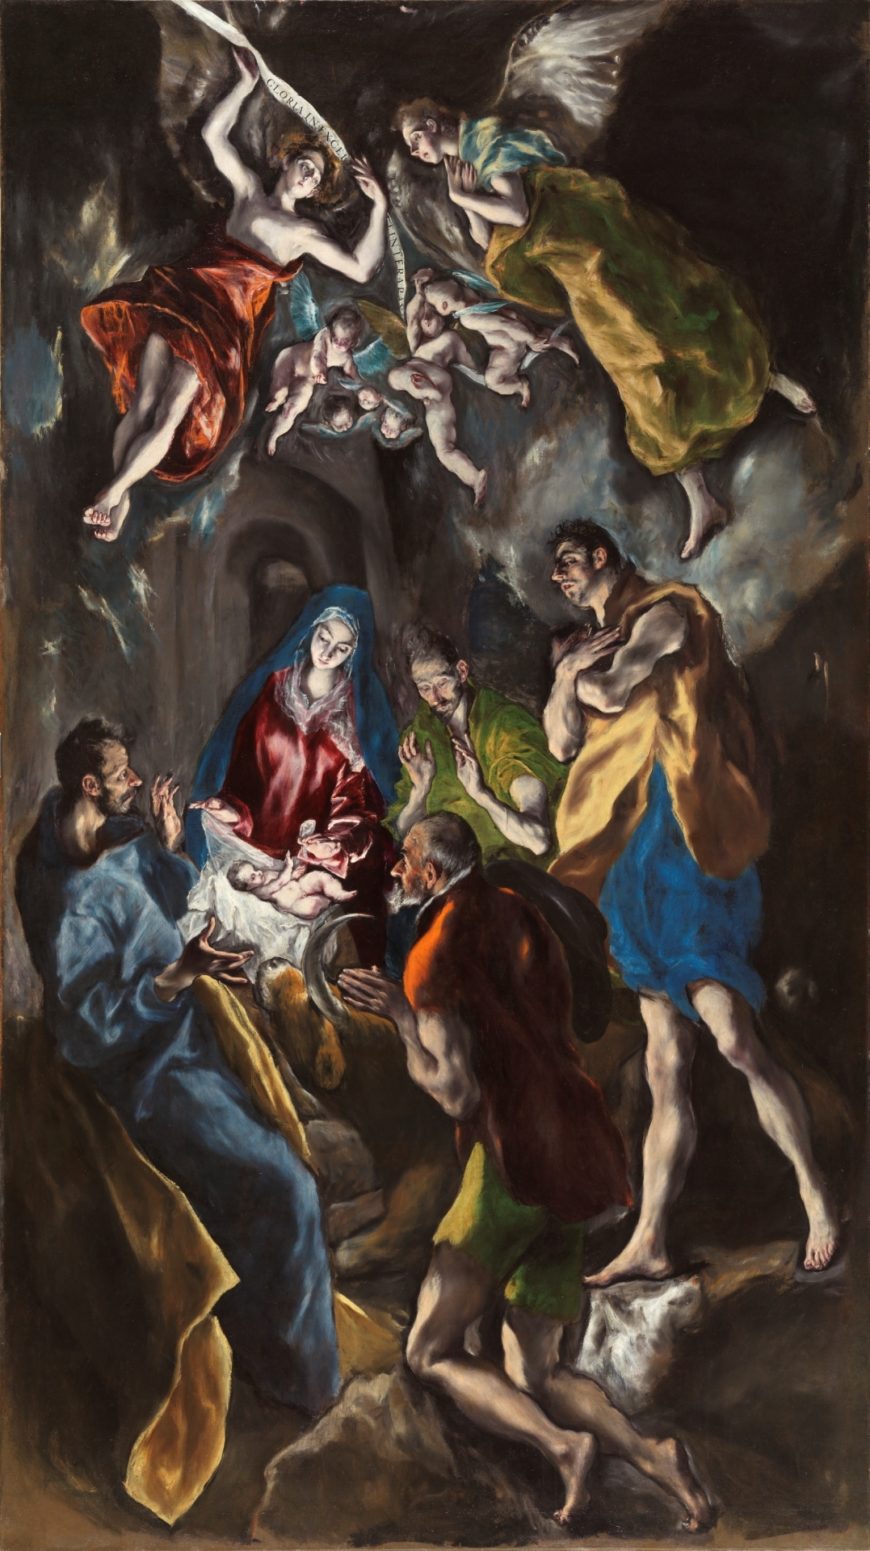 El Greco (Domenikos Theotokopoulos), Adoration of the Shepherds, ca. 1612 – 1614, oil on canvas, 126 x 71″ / 319 x 180 cm (Museo Nacional del Prado, Madrid) 